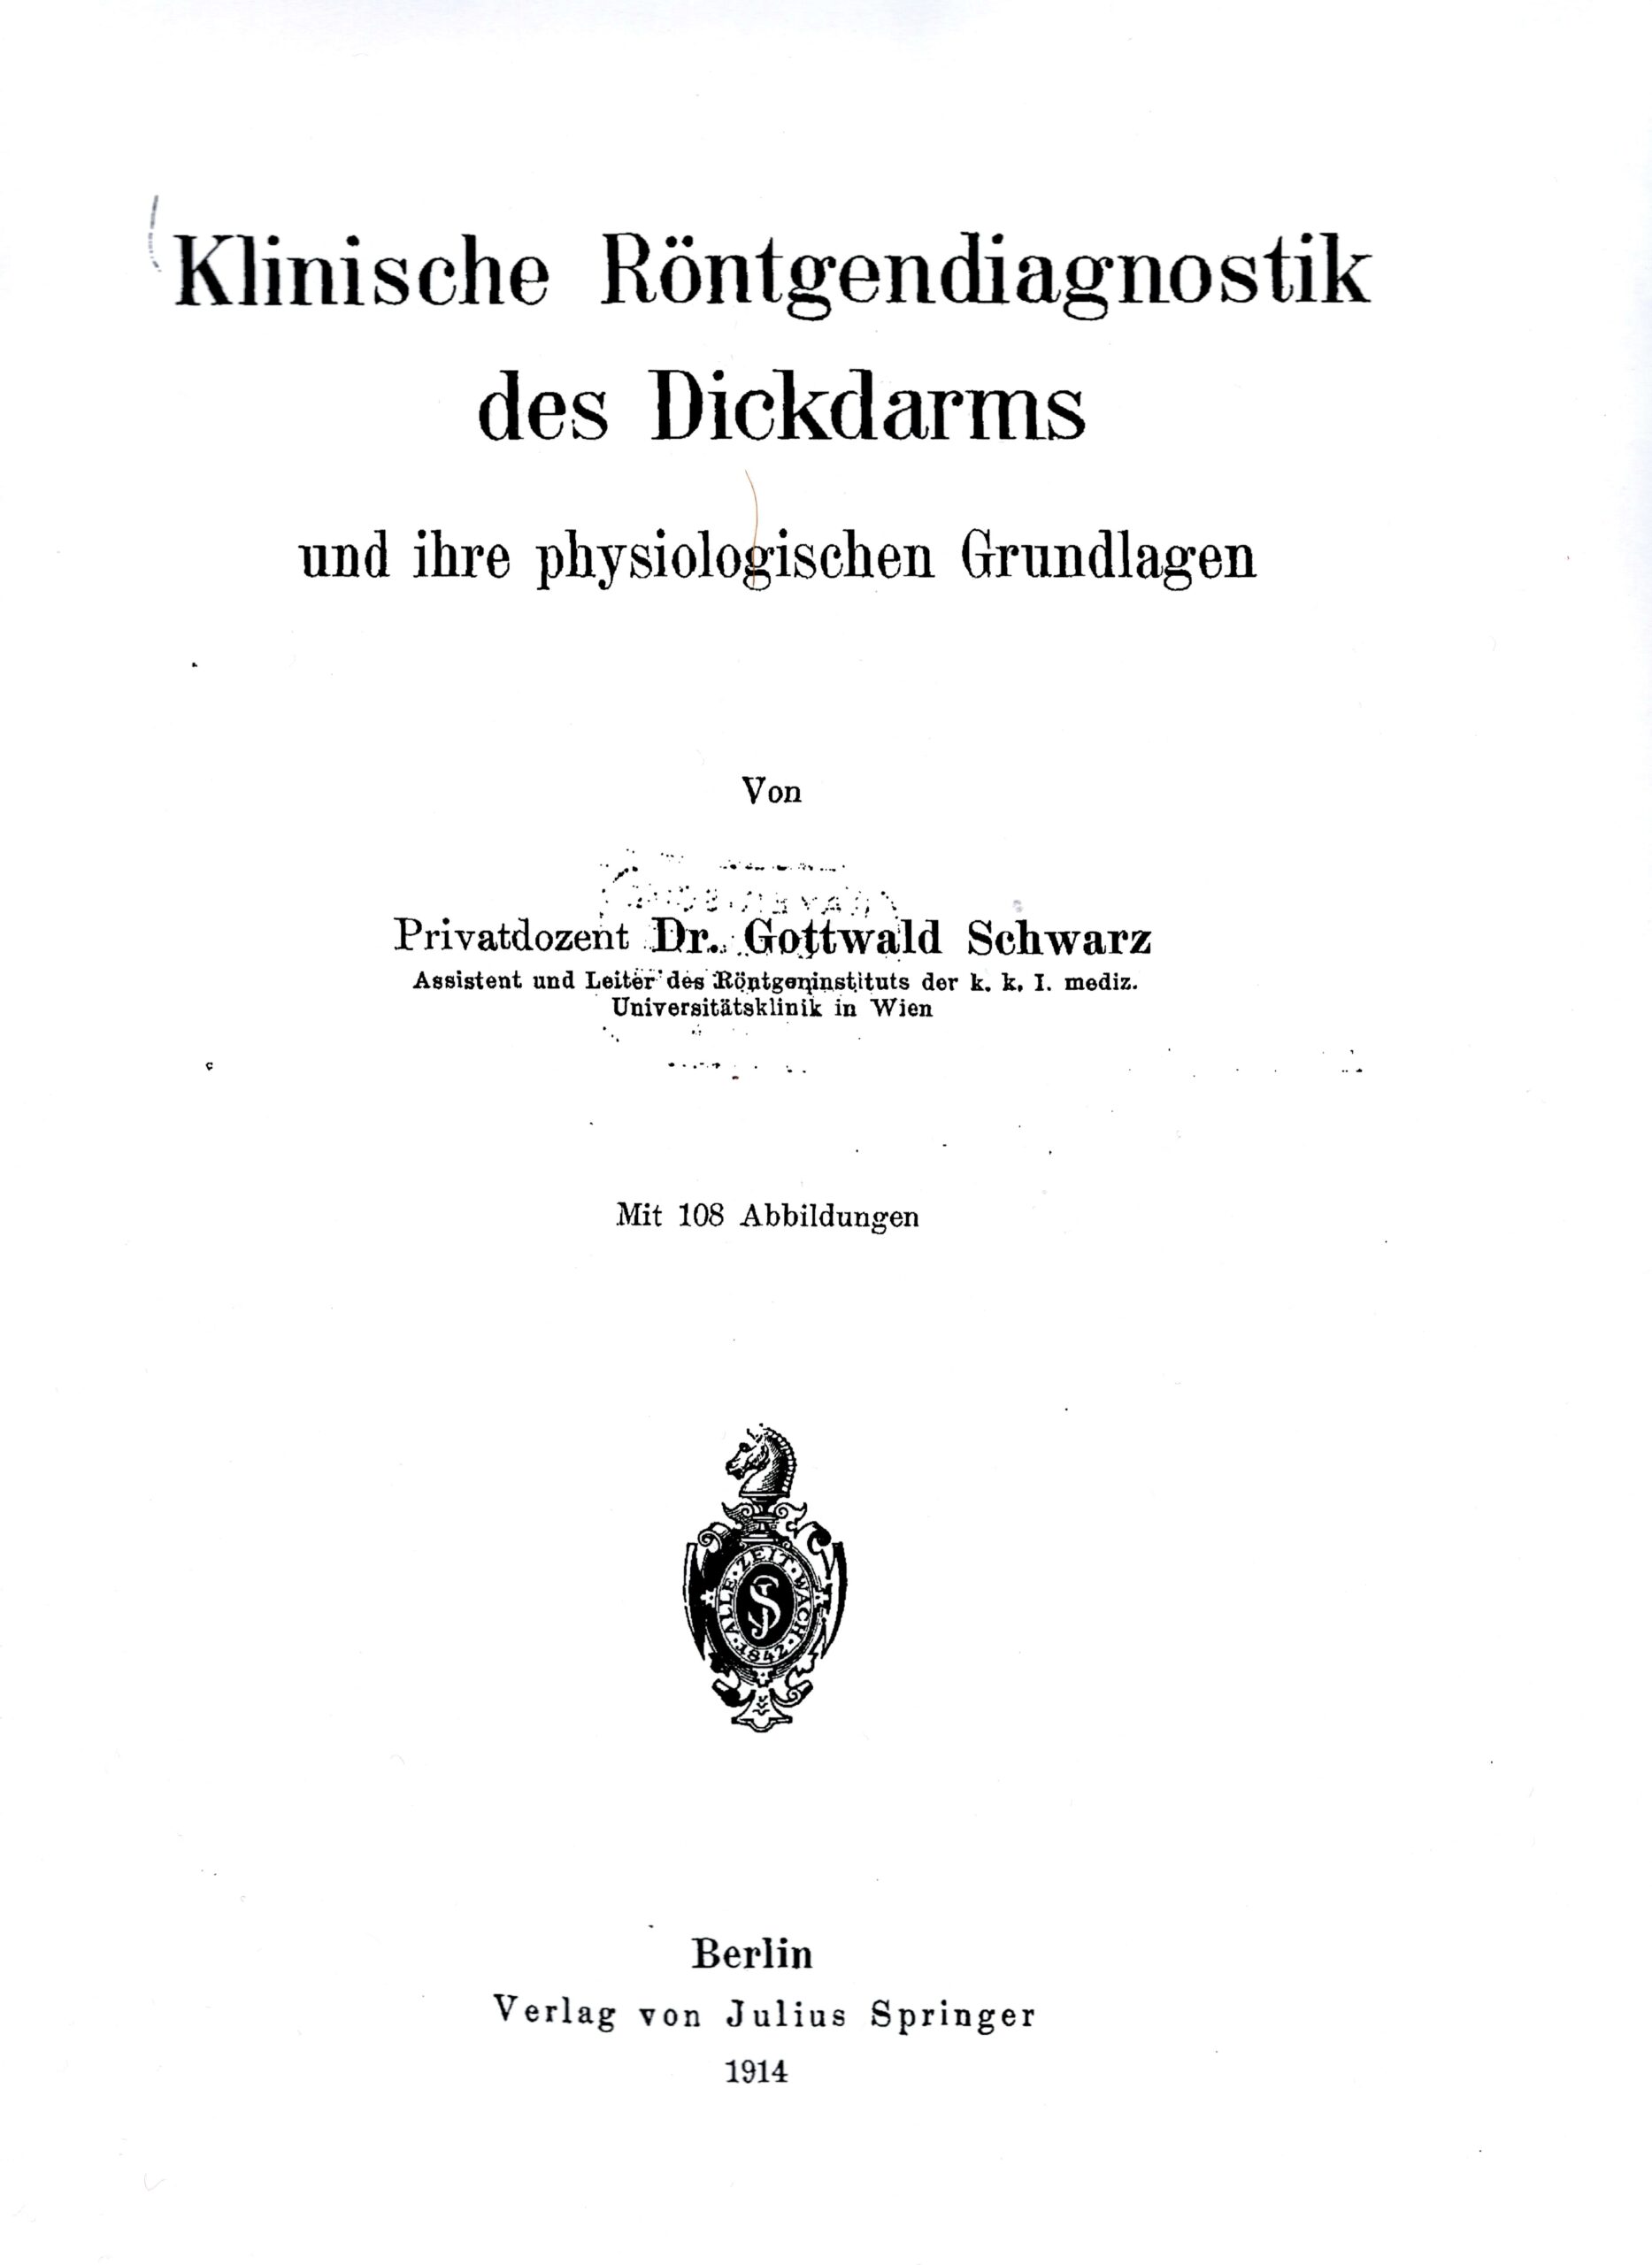 Schwarz' wegweisendes frühes Lehrbuch zur Röntgendiagnostik des Dickdarms